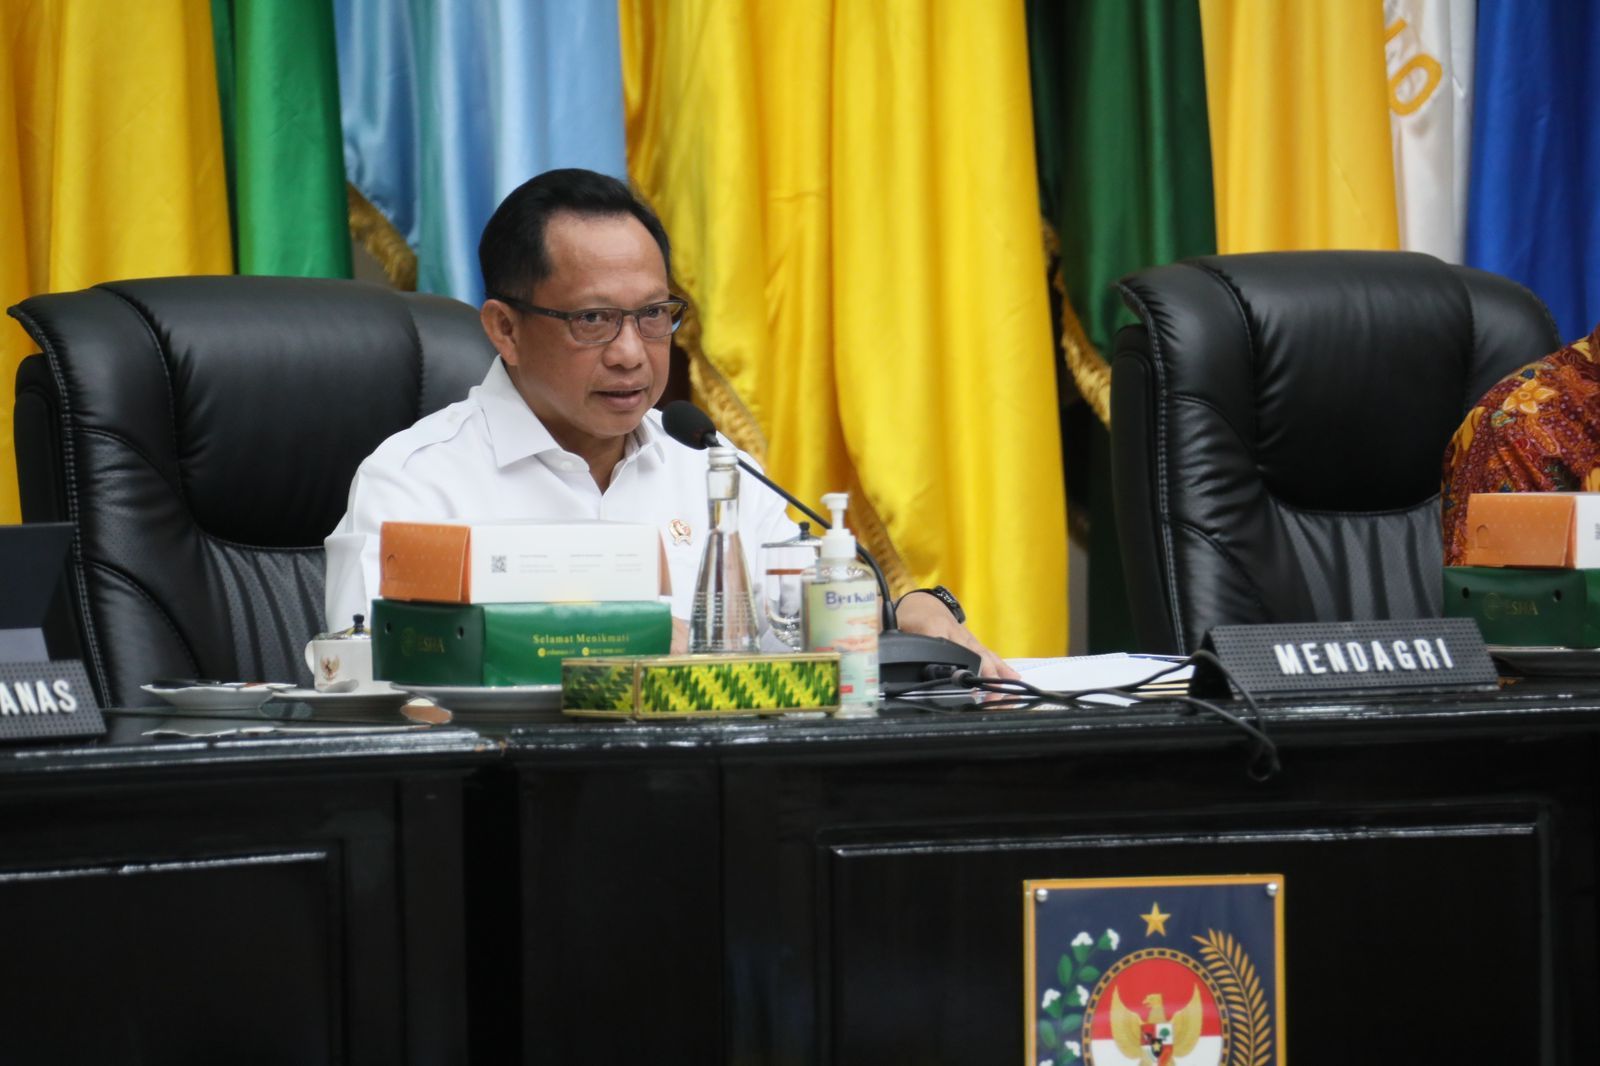 Menteri Dalam Negeri Tito Karnavian menerbitkan Instruksi Mendagri (Inmendagri) tentang Pengendalian Pencemaran Udara di Jabodetabek.